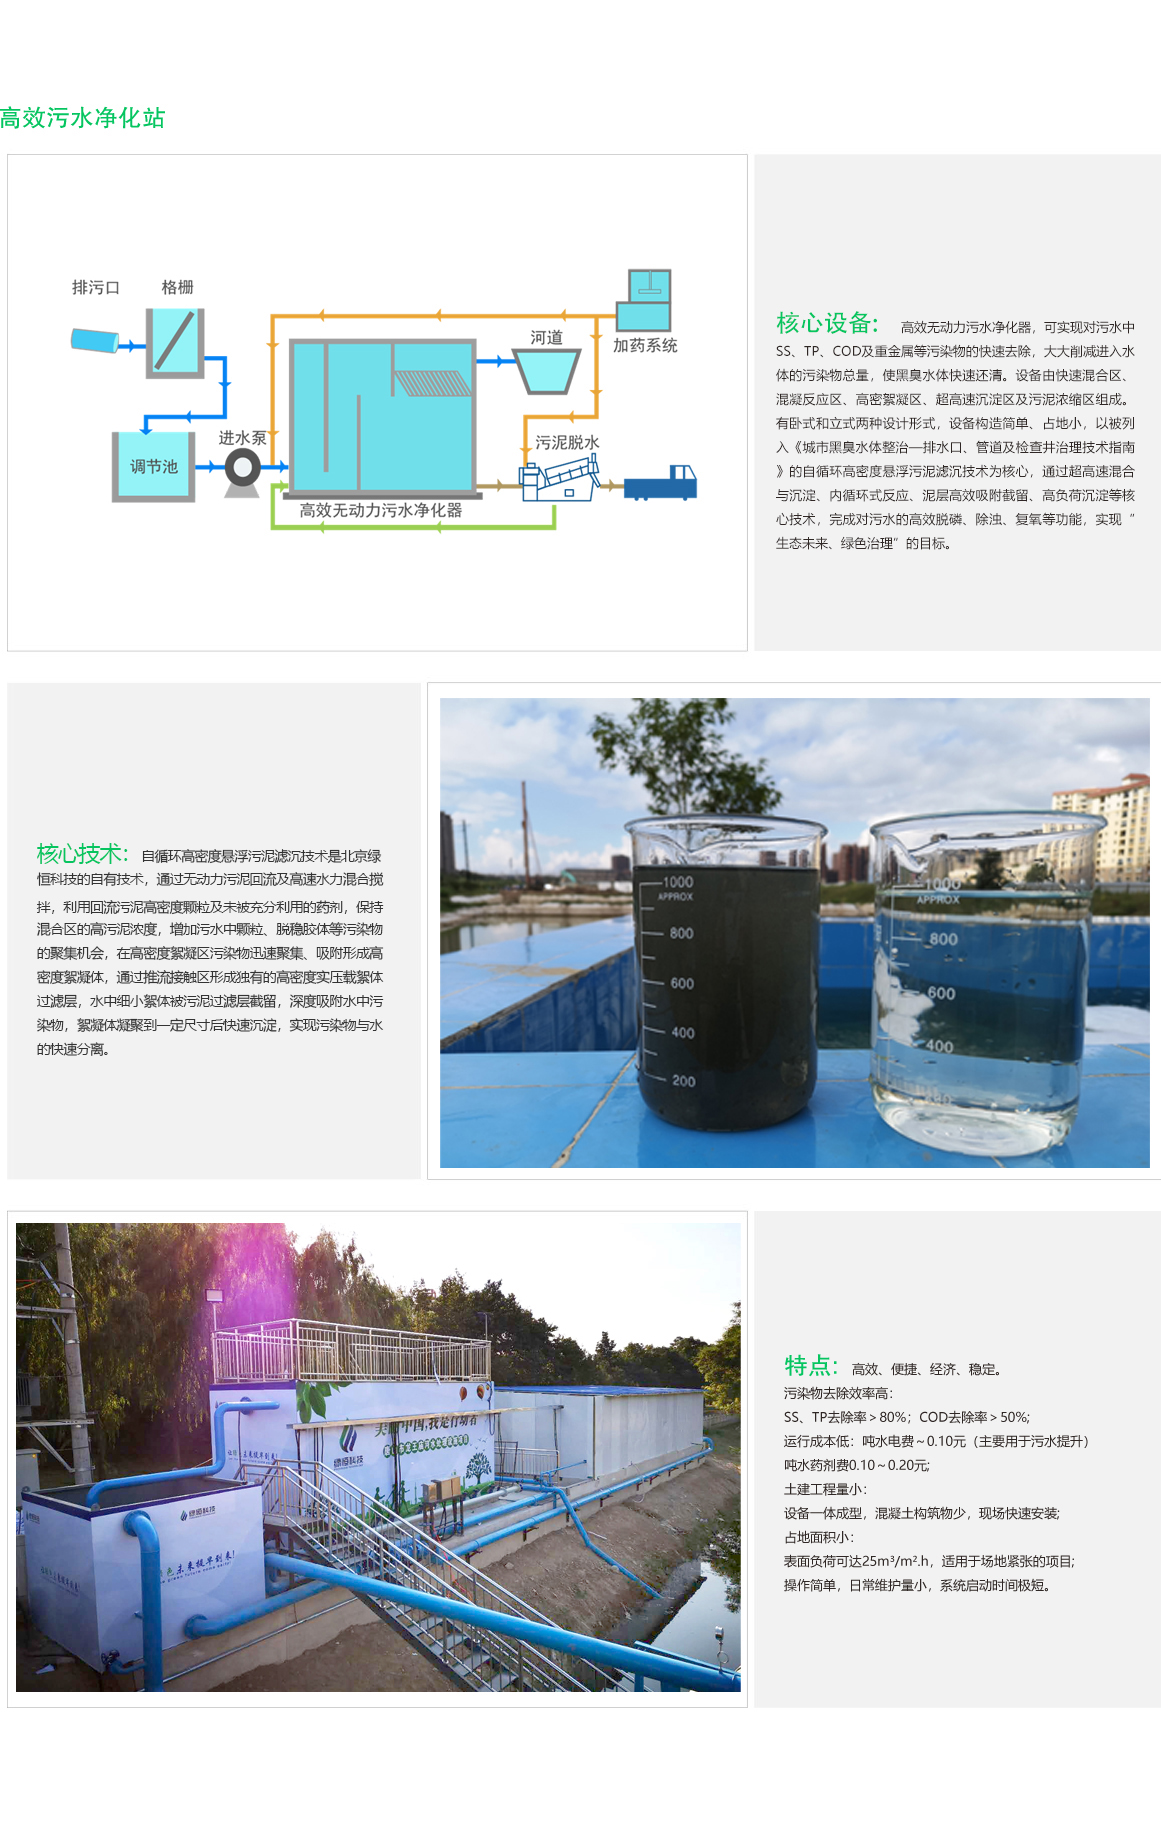 高效污水净化系统-核心技术.jpg